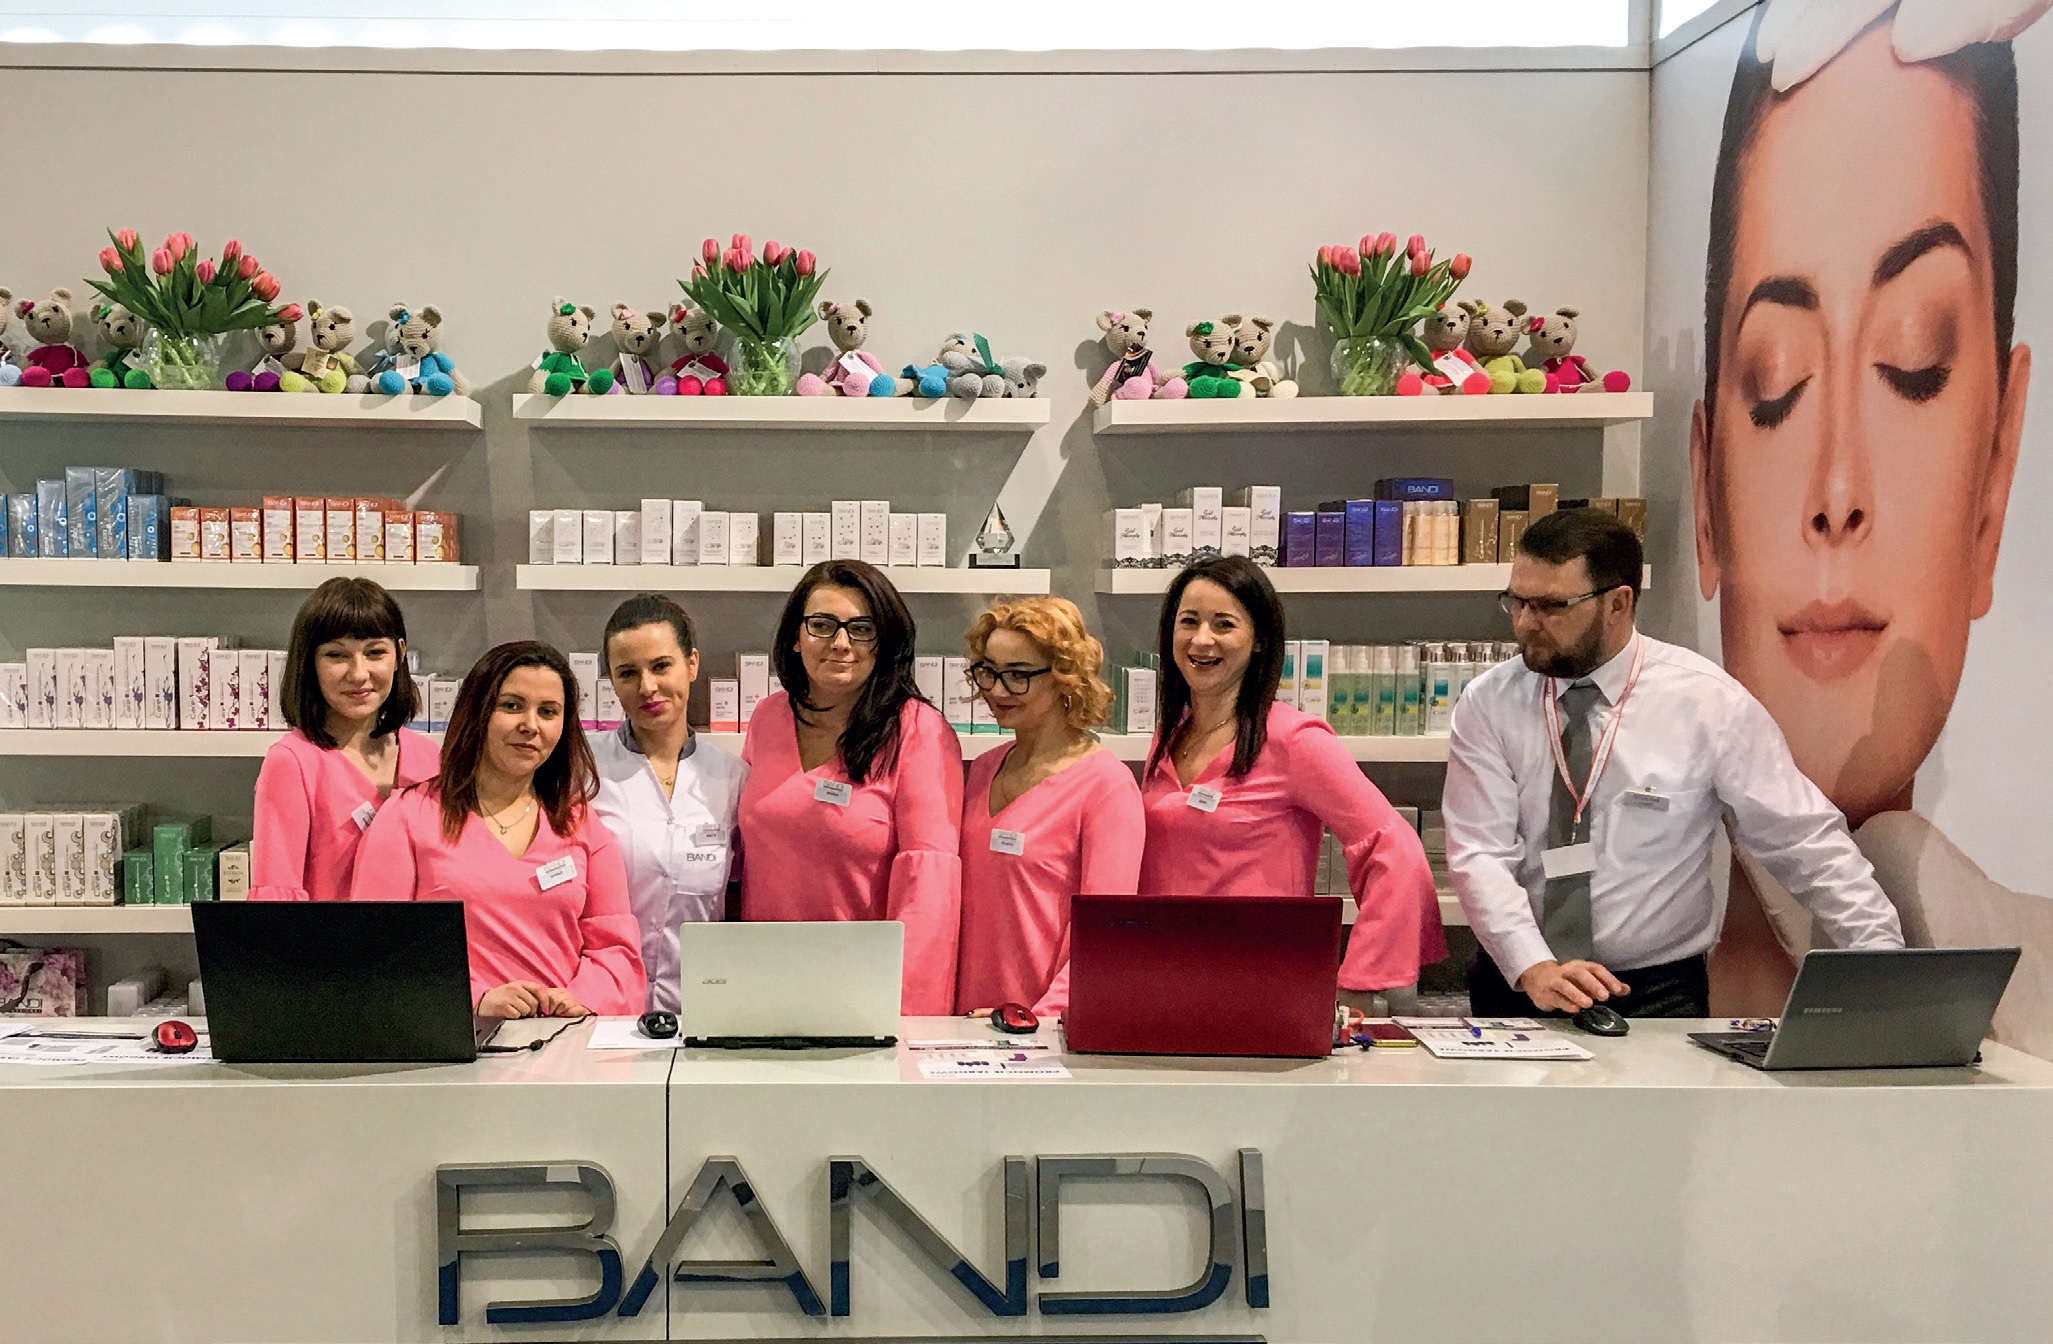 BANDI na Międzynarodowych Targach i Kongresie Beauty Forum & Spa 2018